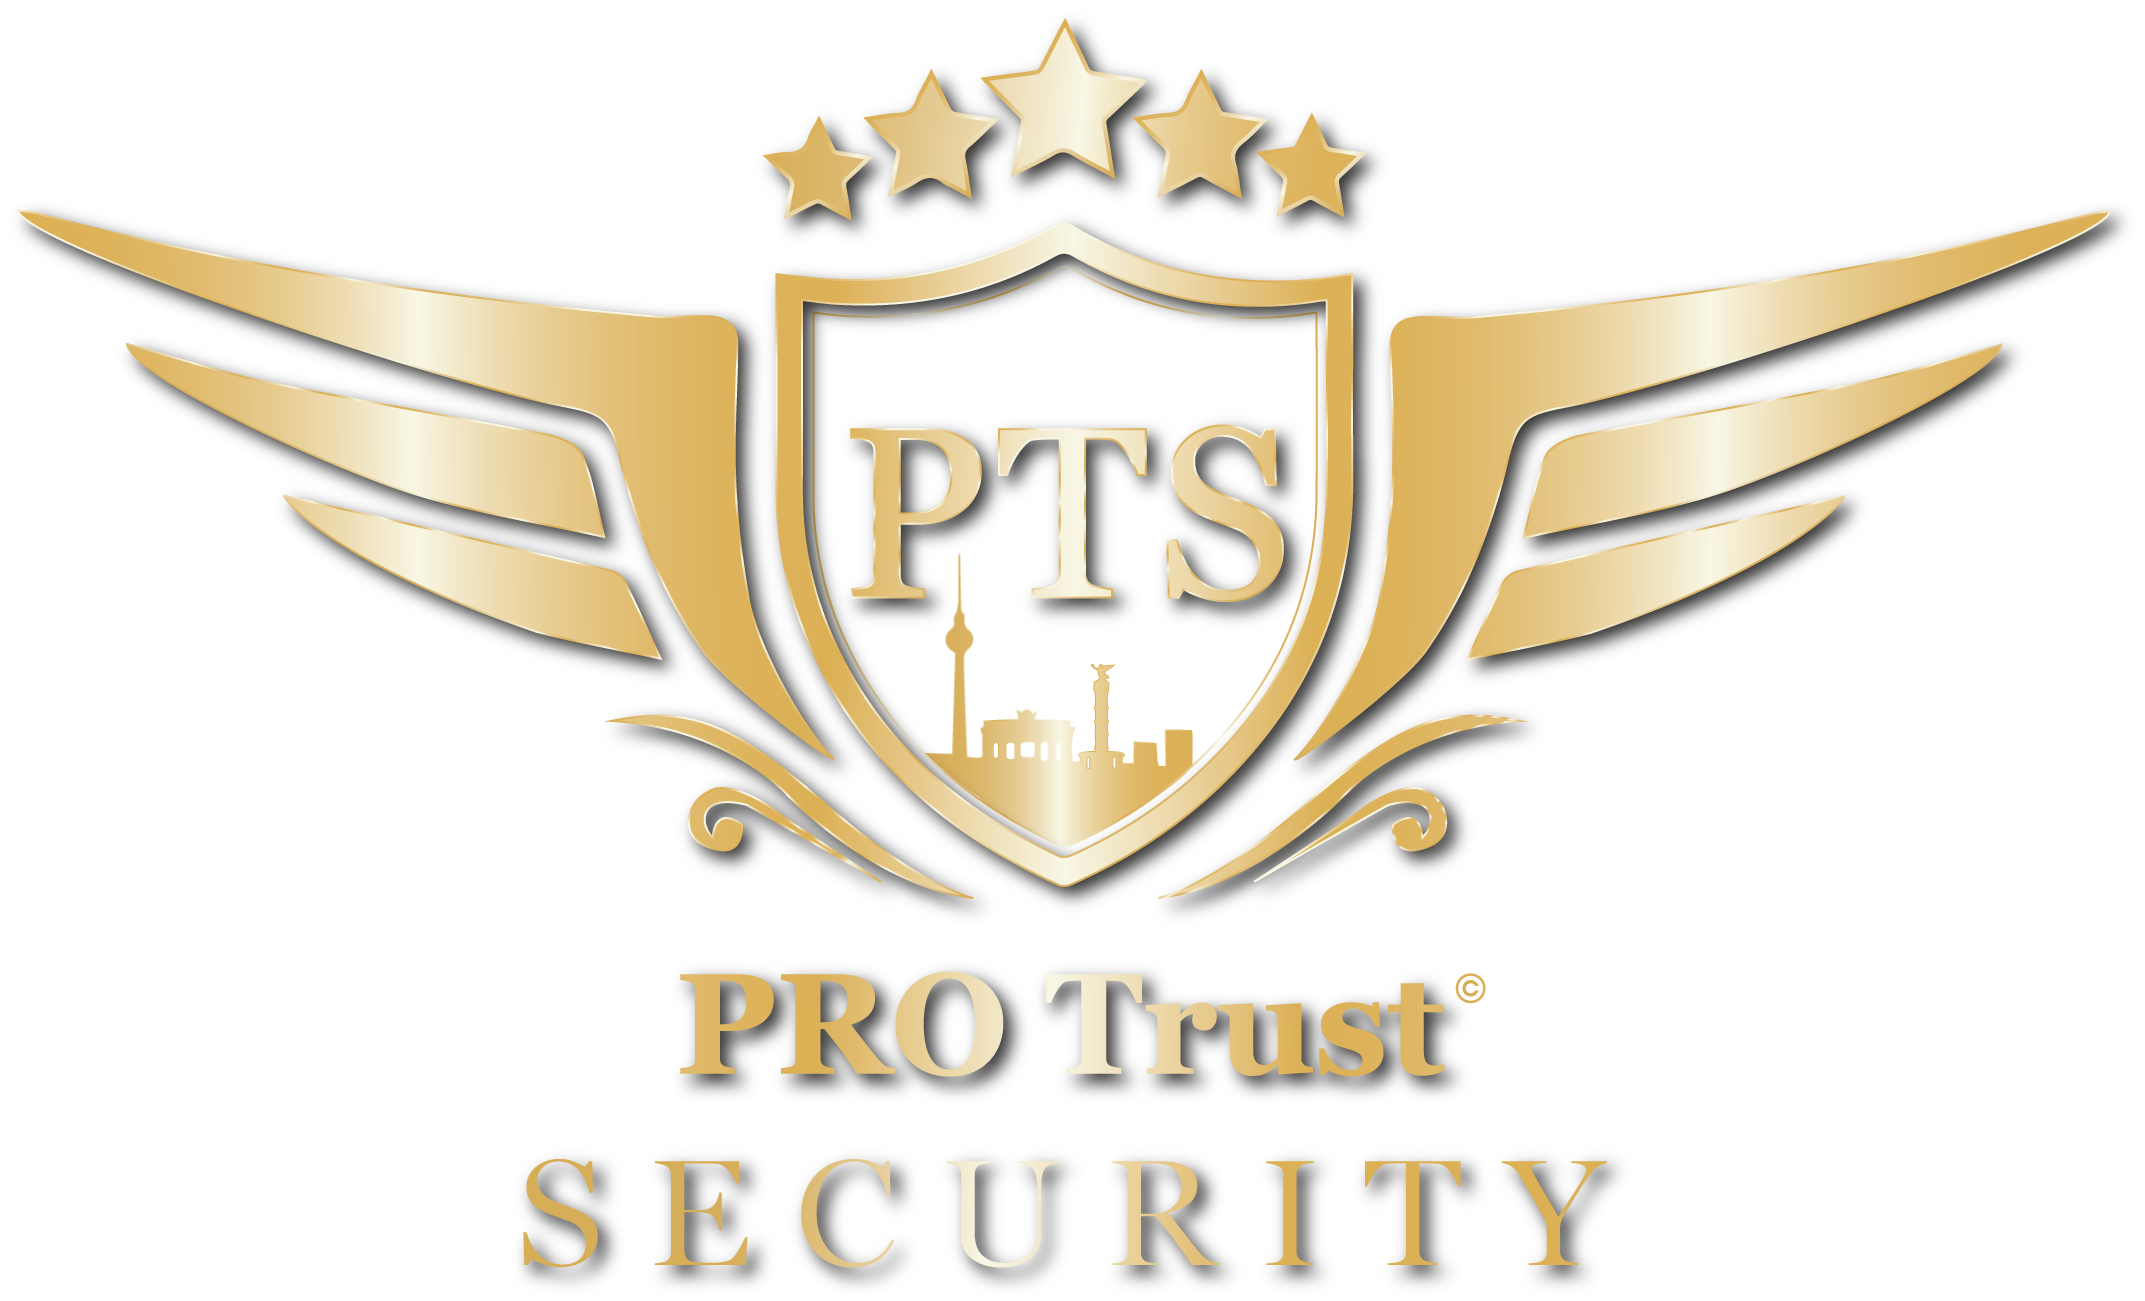 Pro-Trust Security